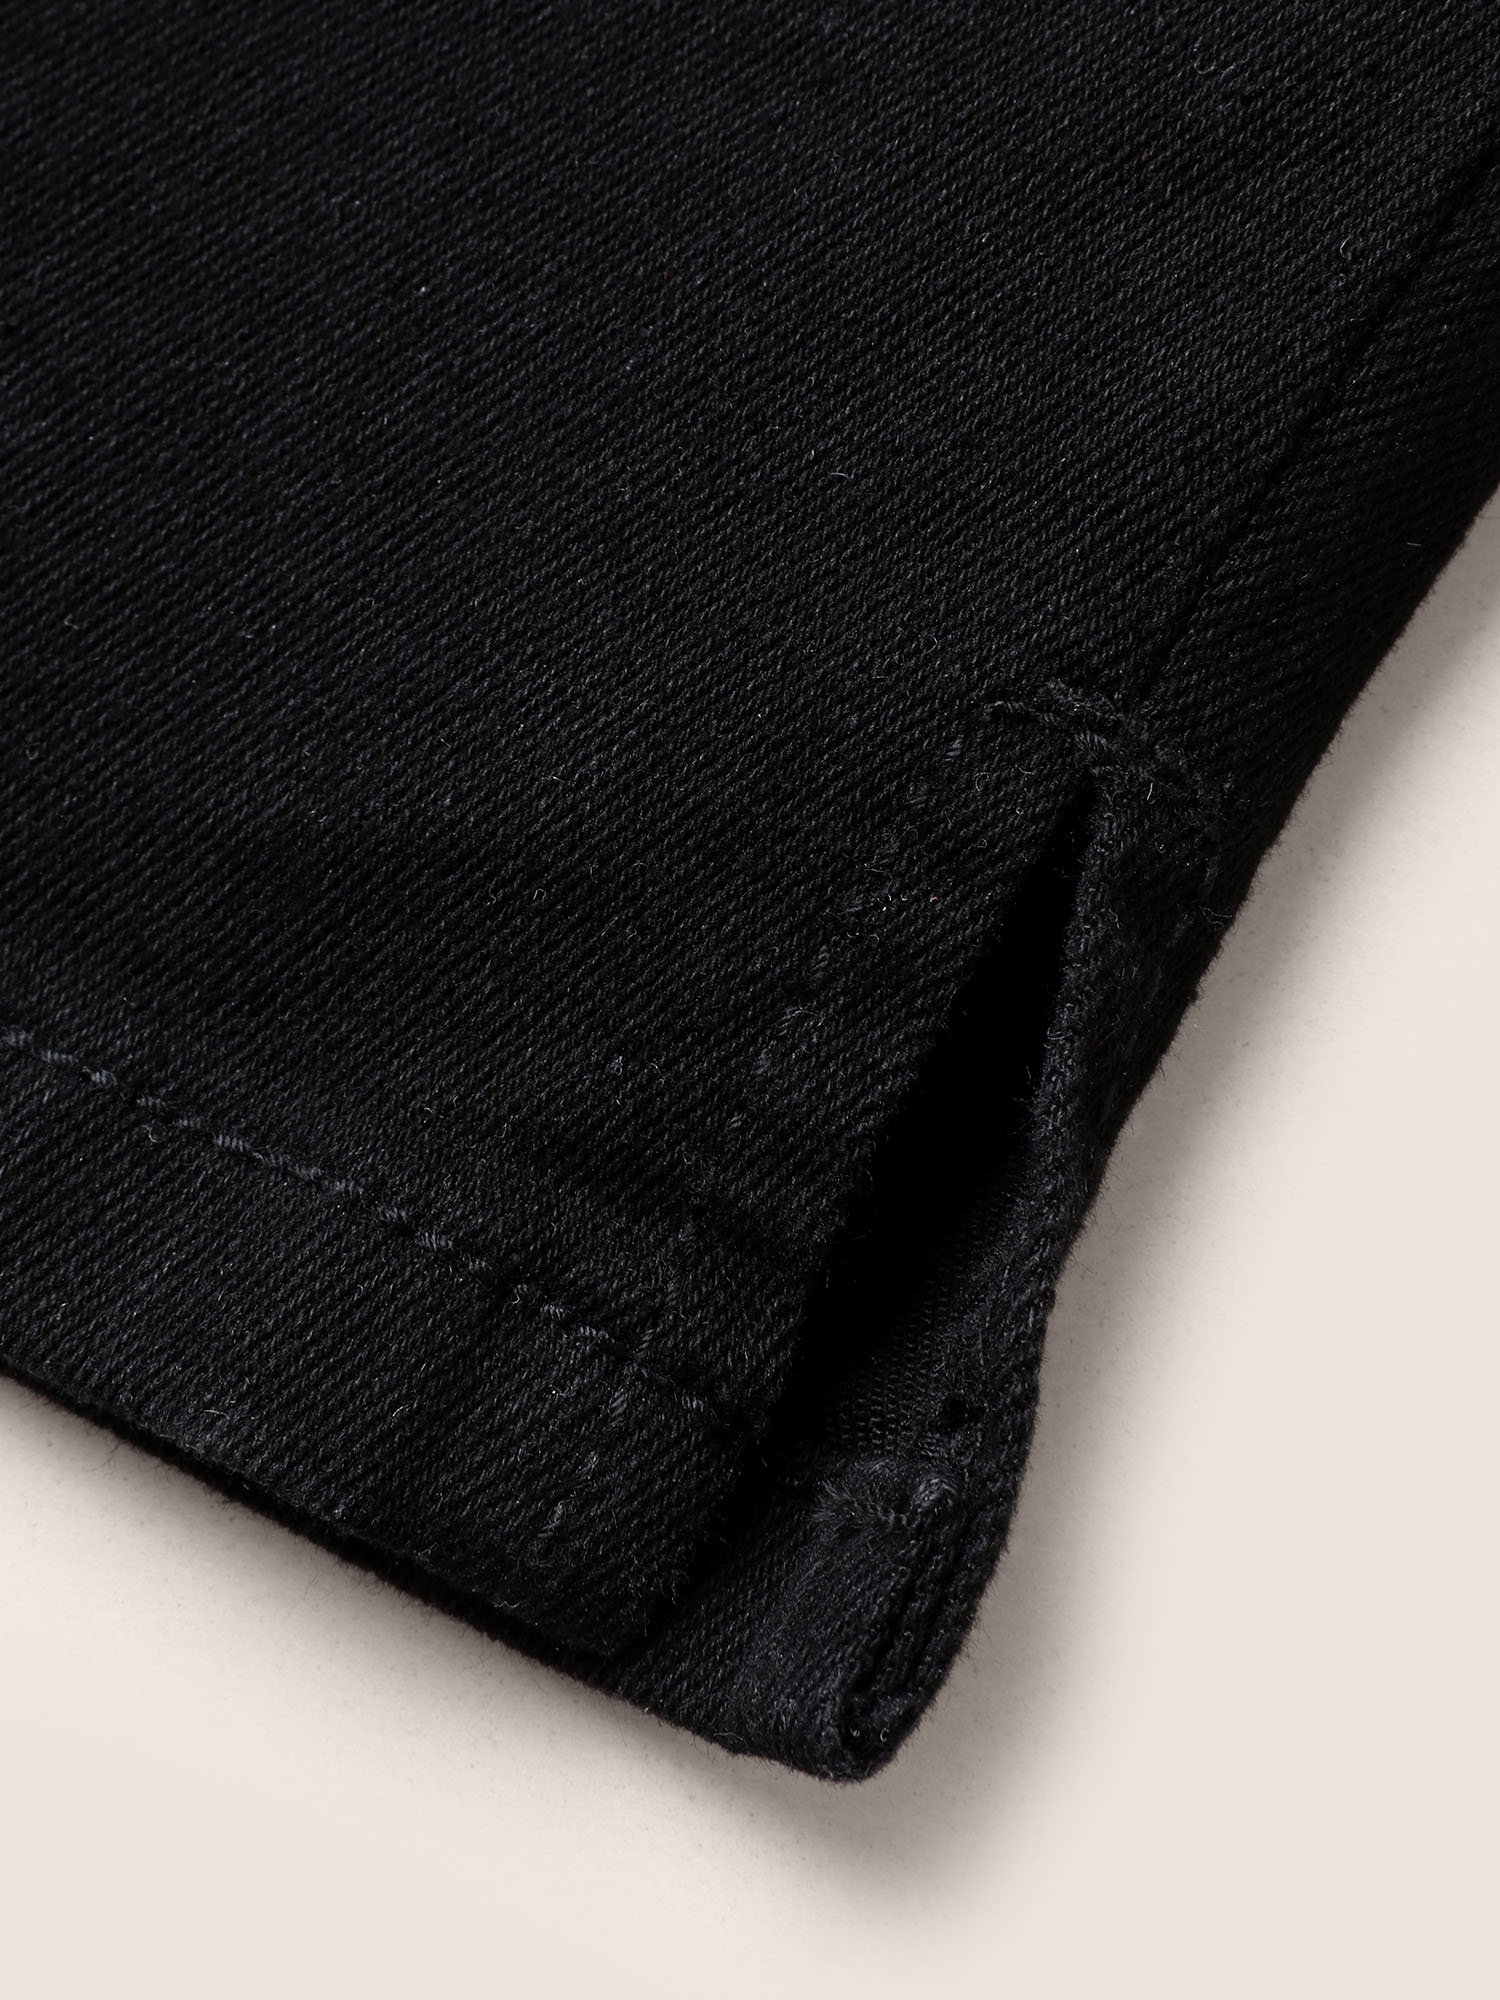 

Plus Size Black Wash Split Side Pull-on Jegging Jeans Women Black Casual Slit High stretch Slanted pocket Jeans BloomChic